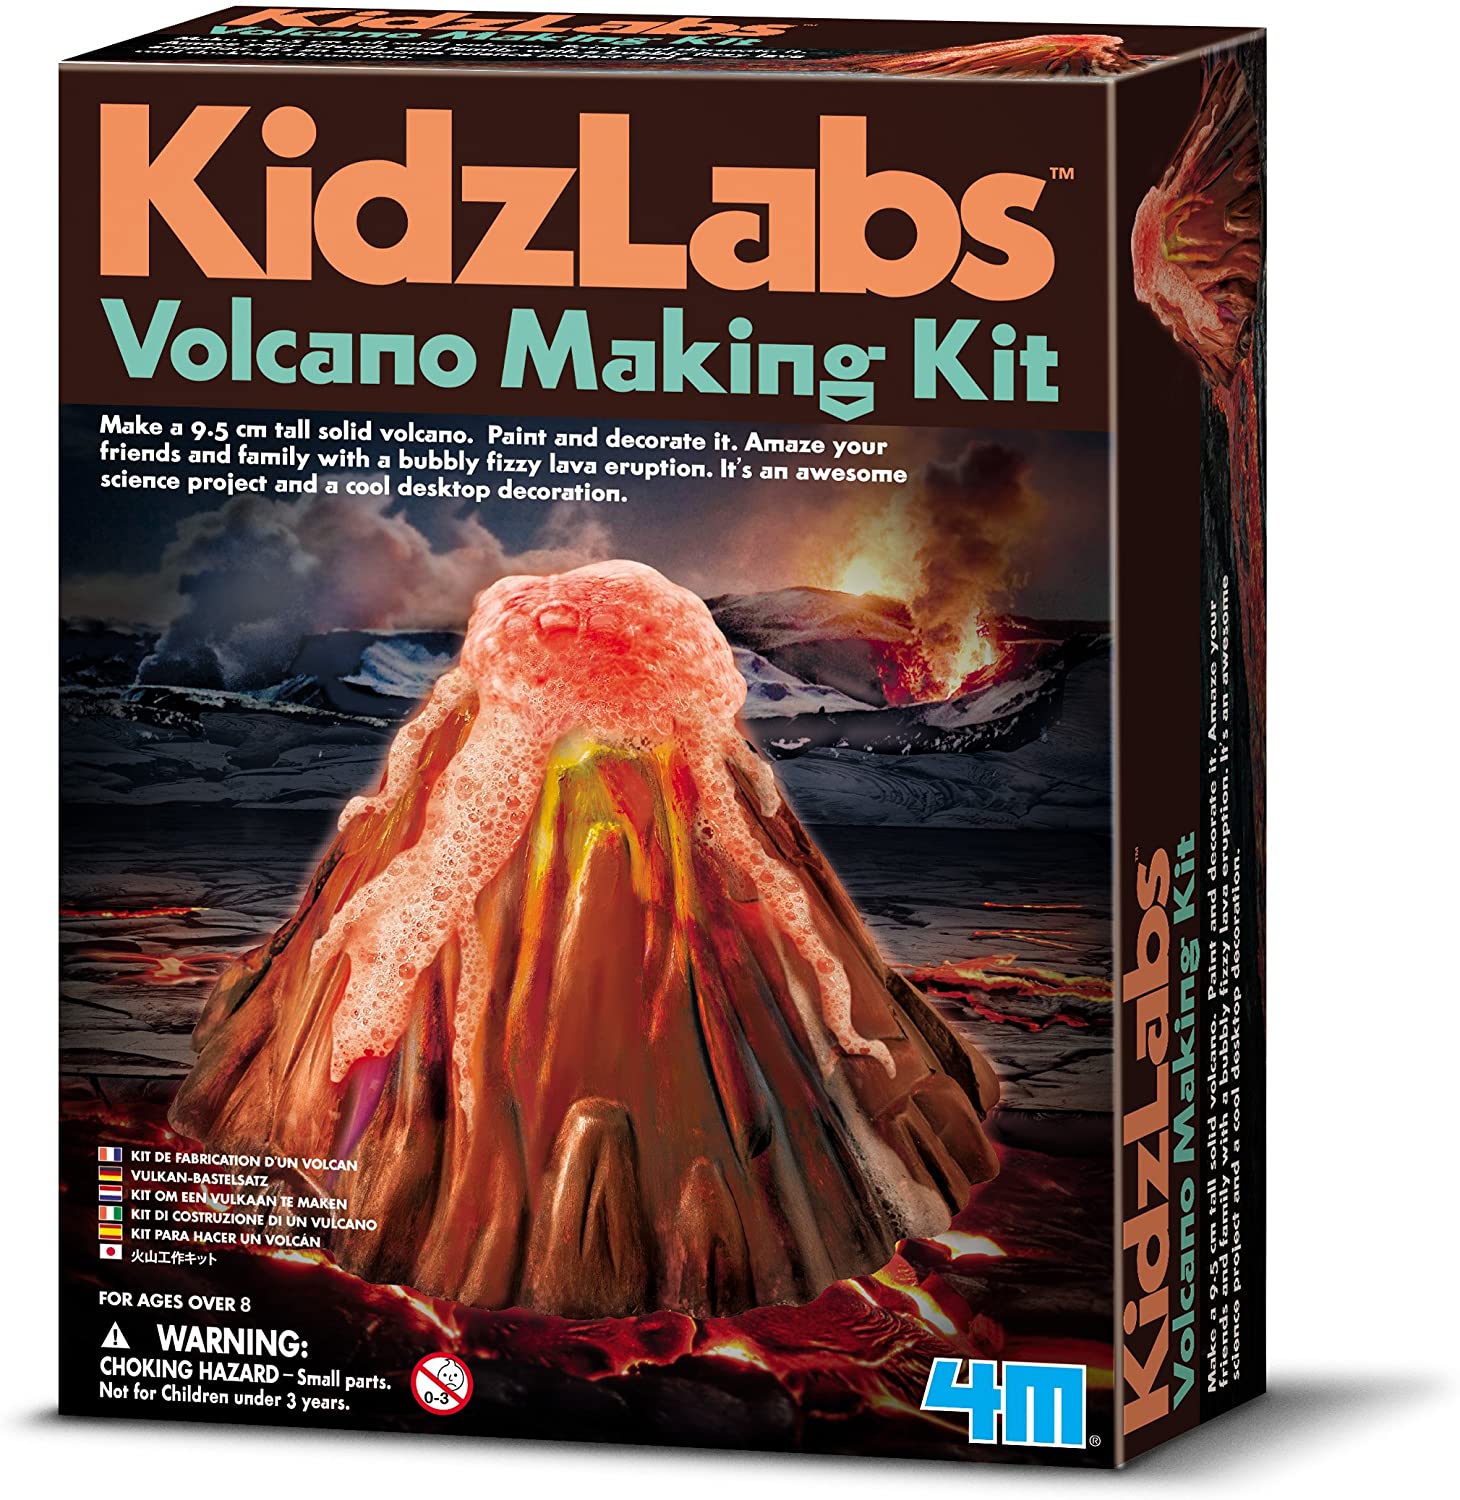 Kidzlabs Make a Volcano